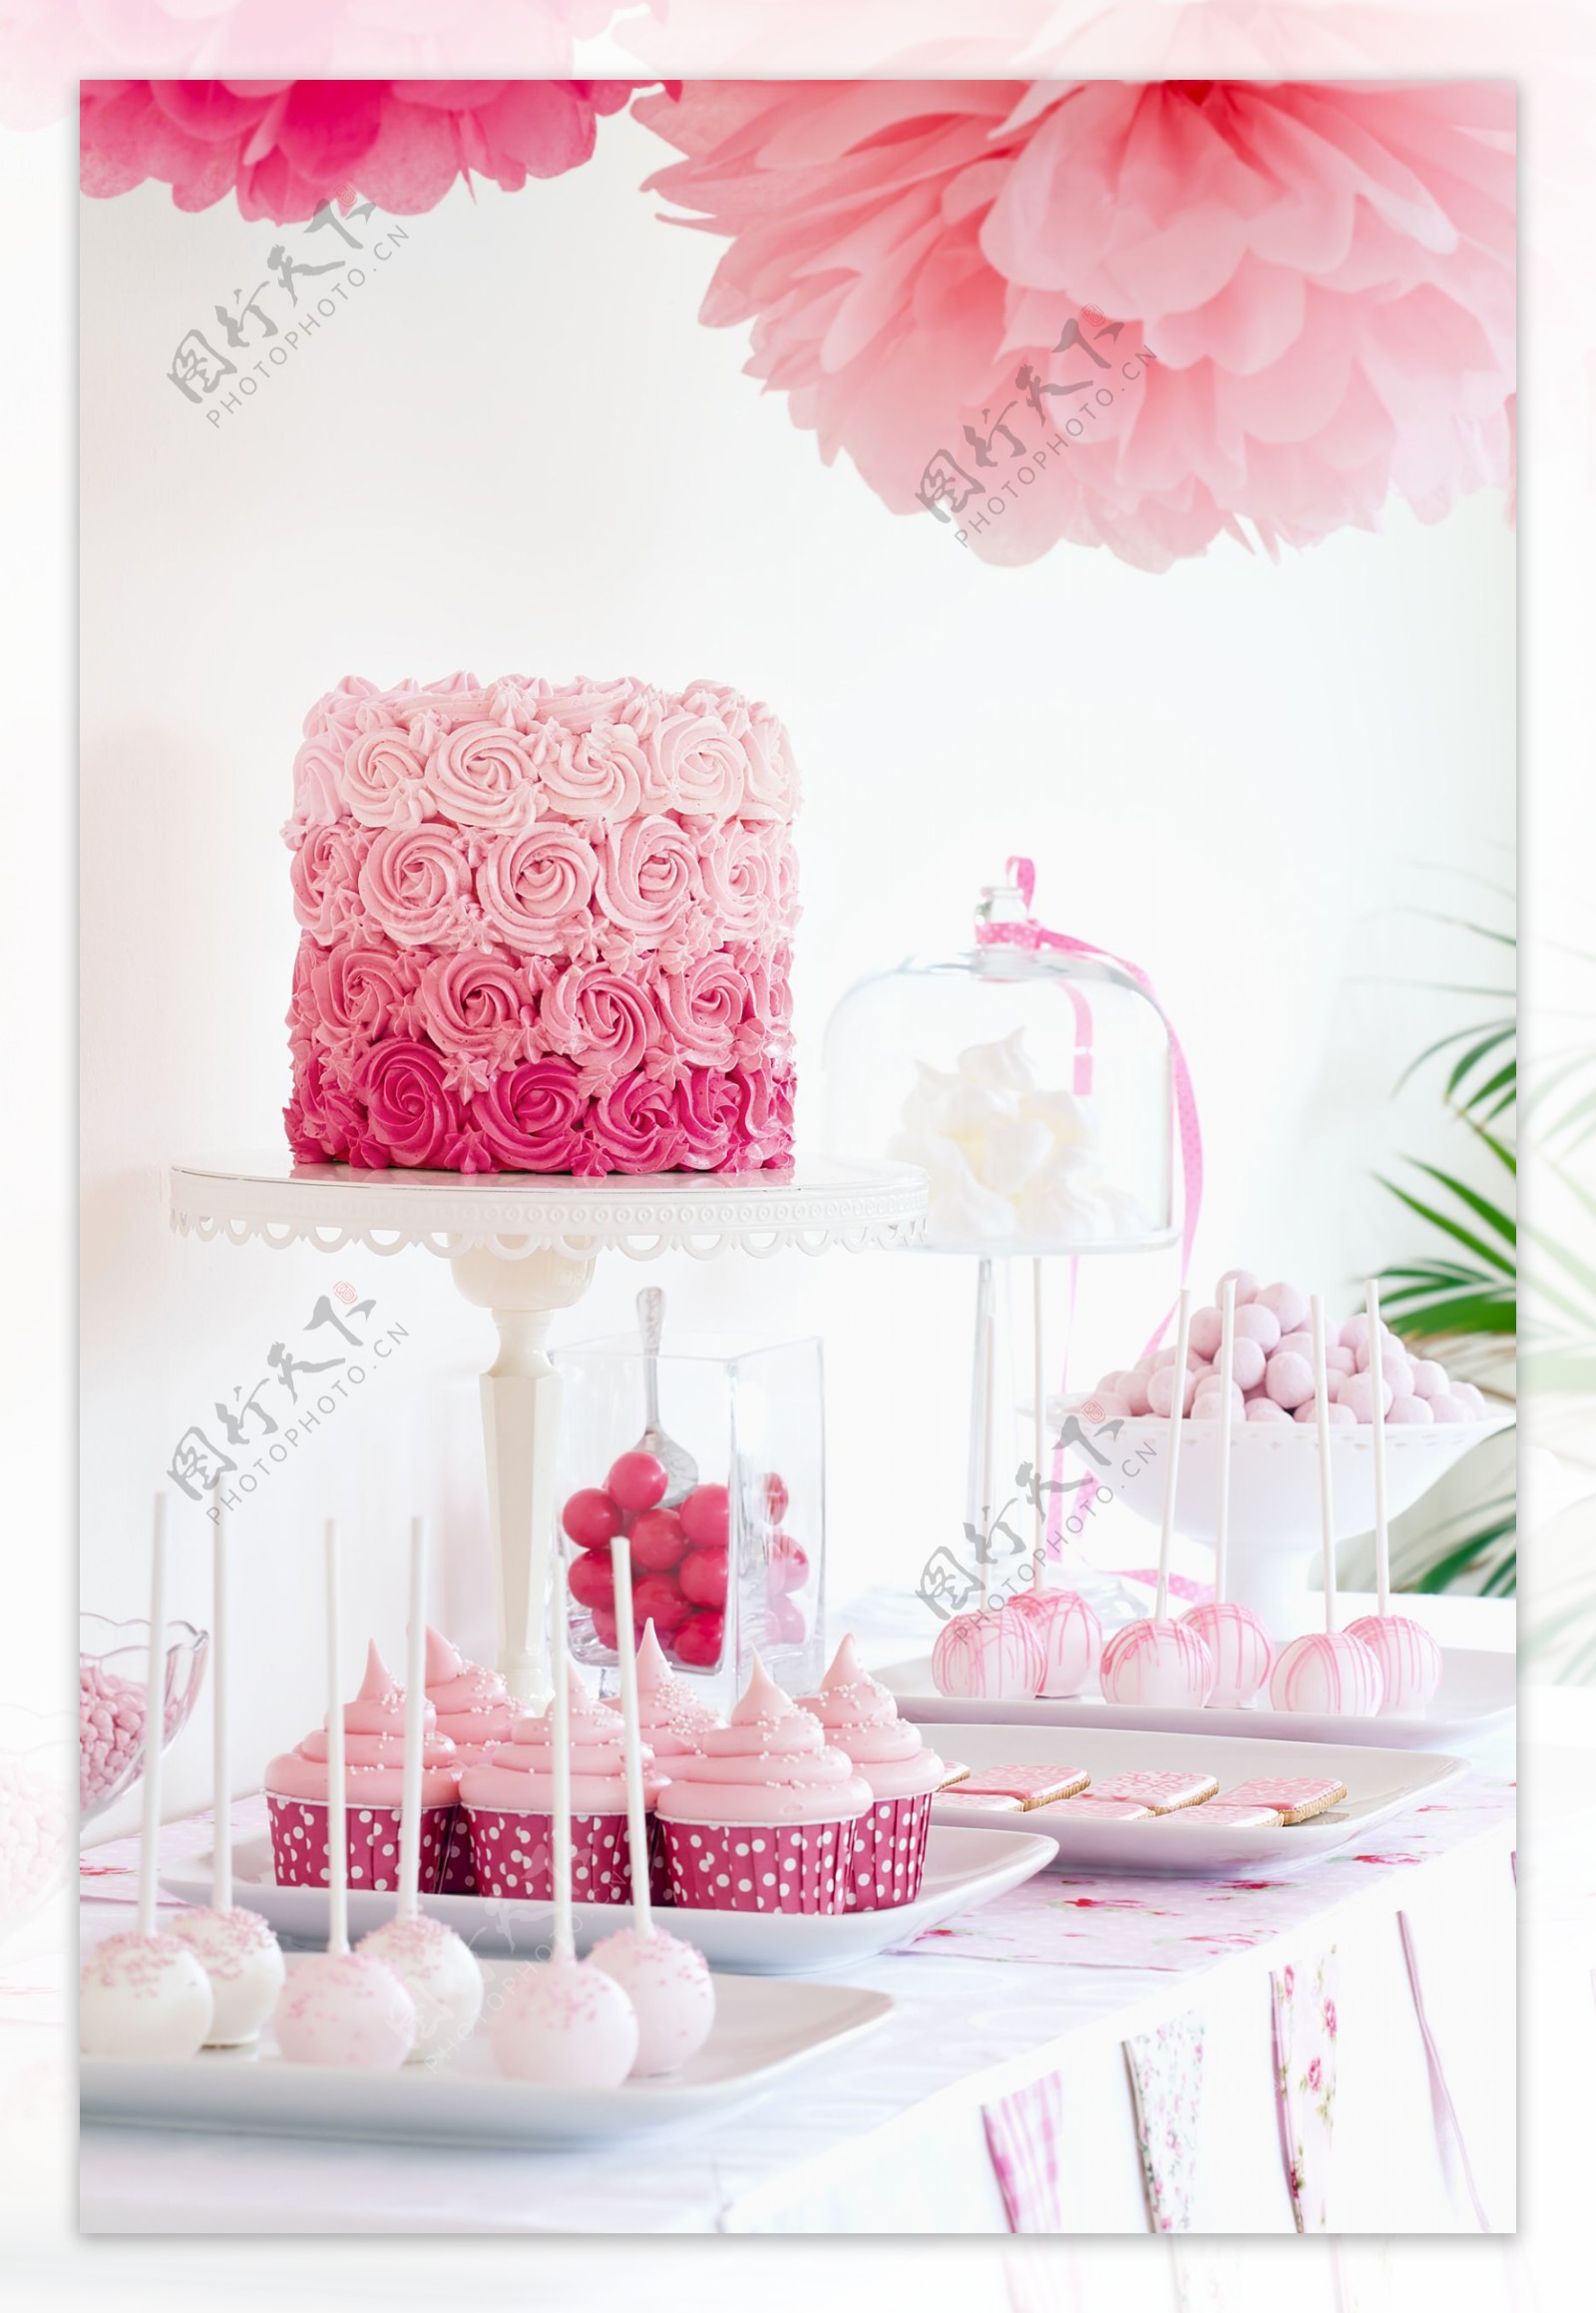 粉红蛋糕与玫瑰蛋糕